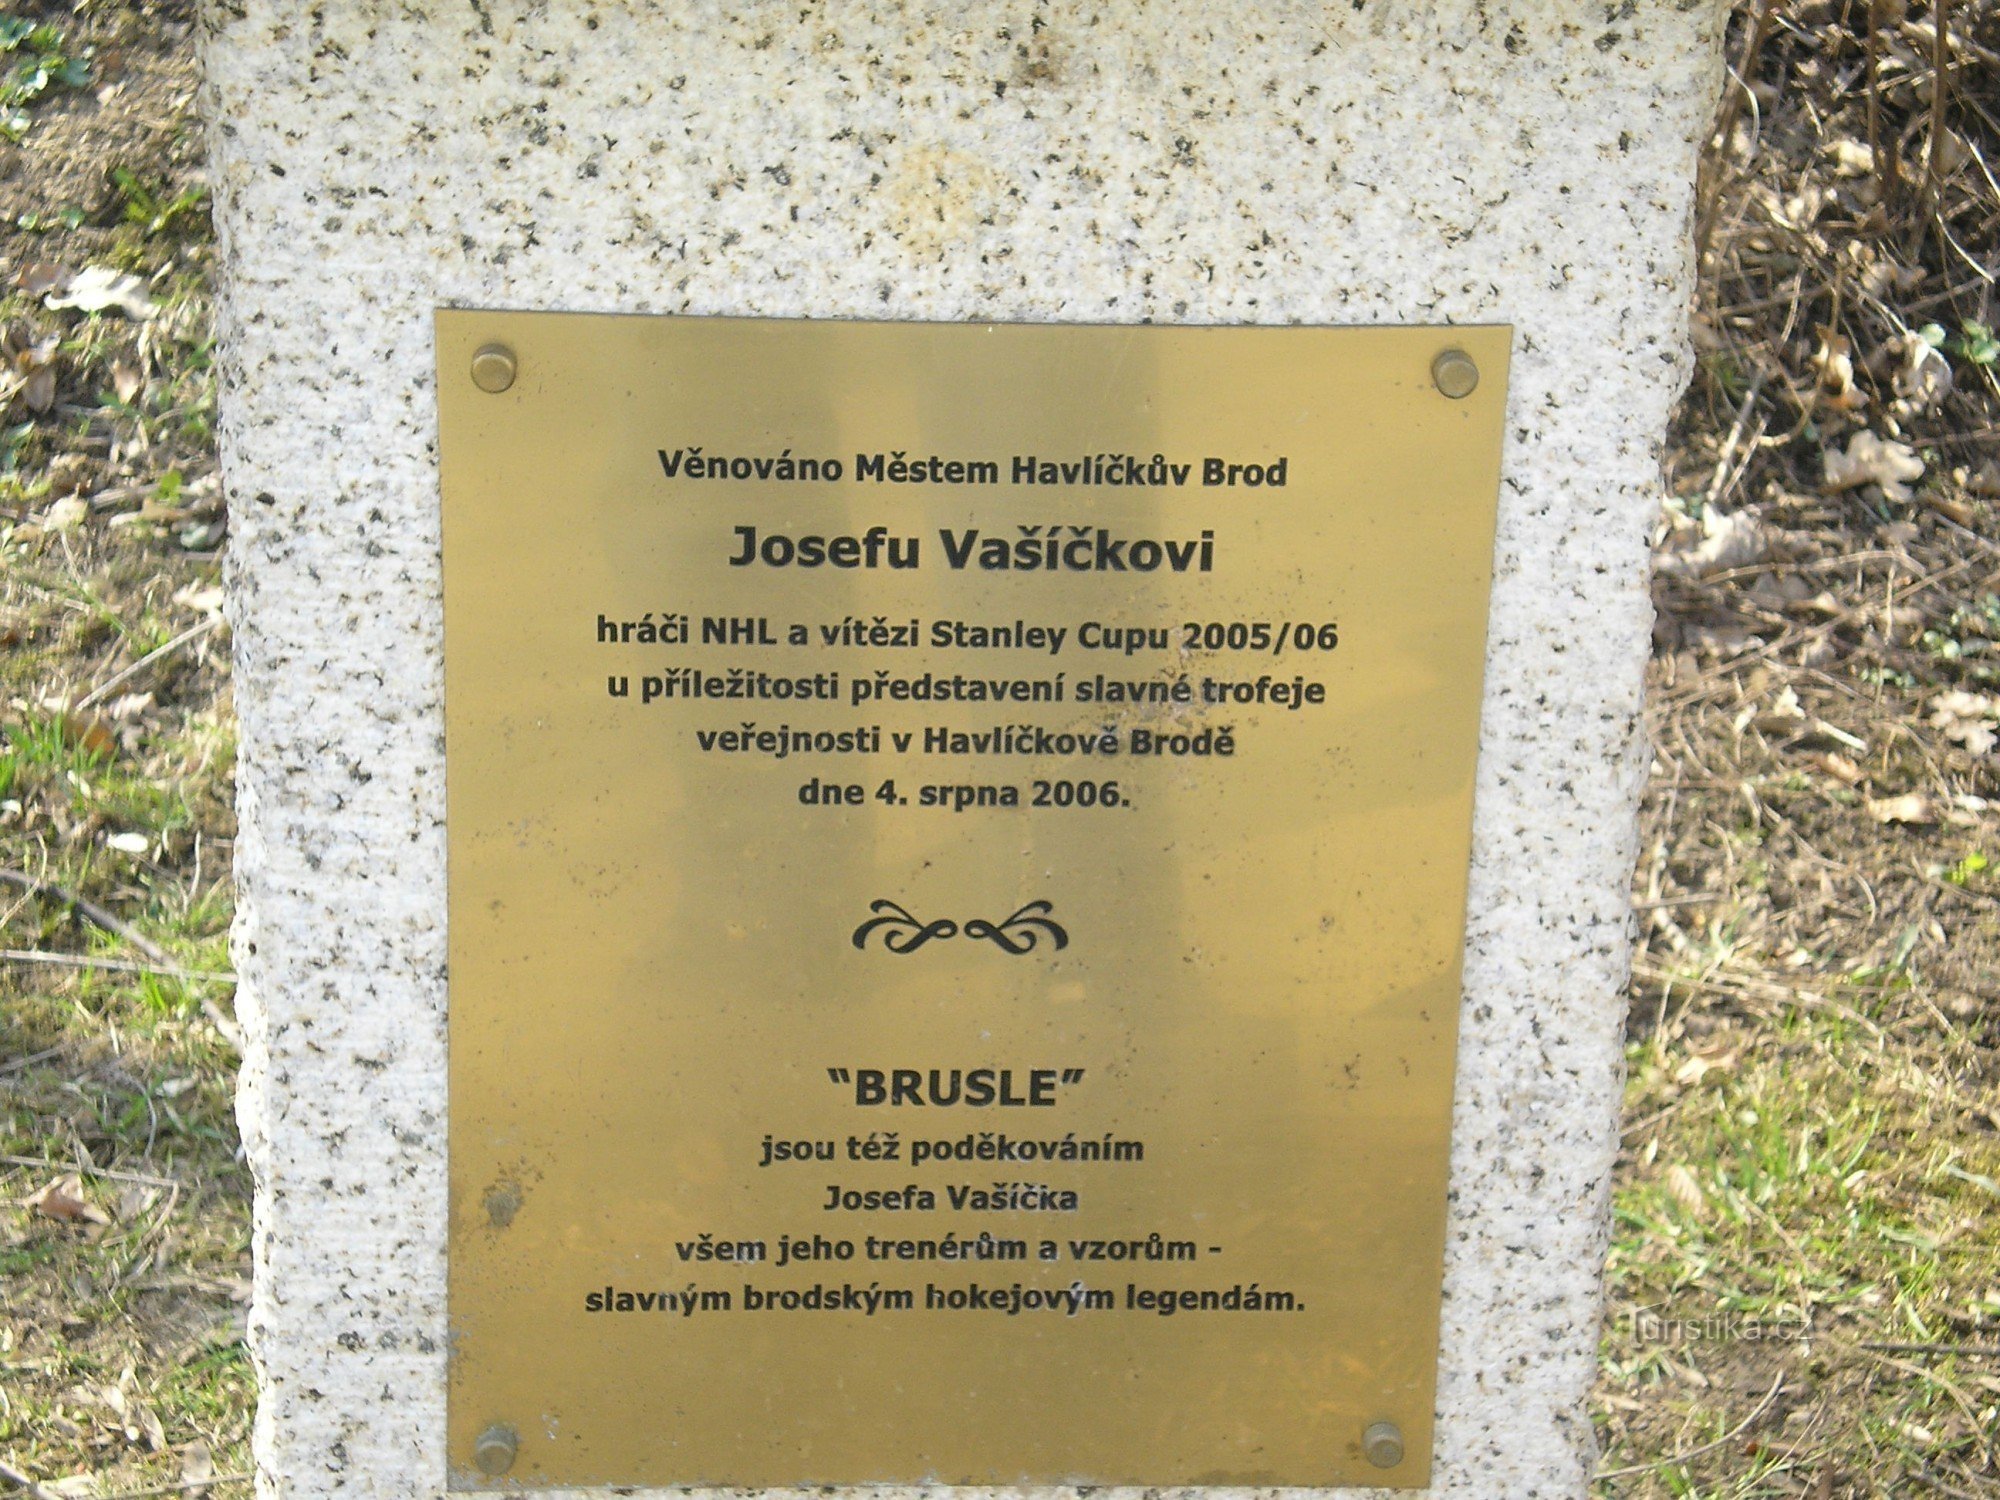 Monument to Josef Vašíček